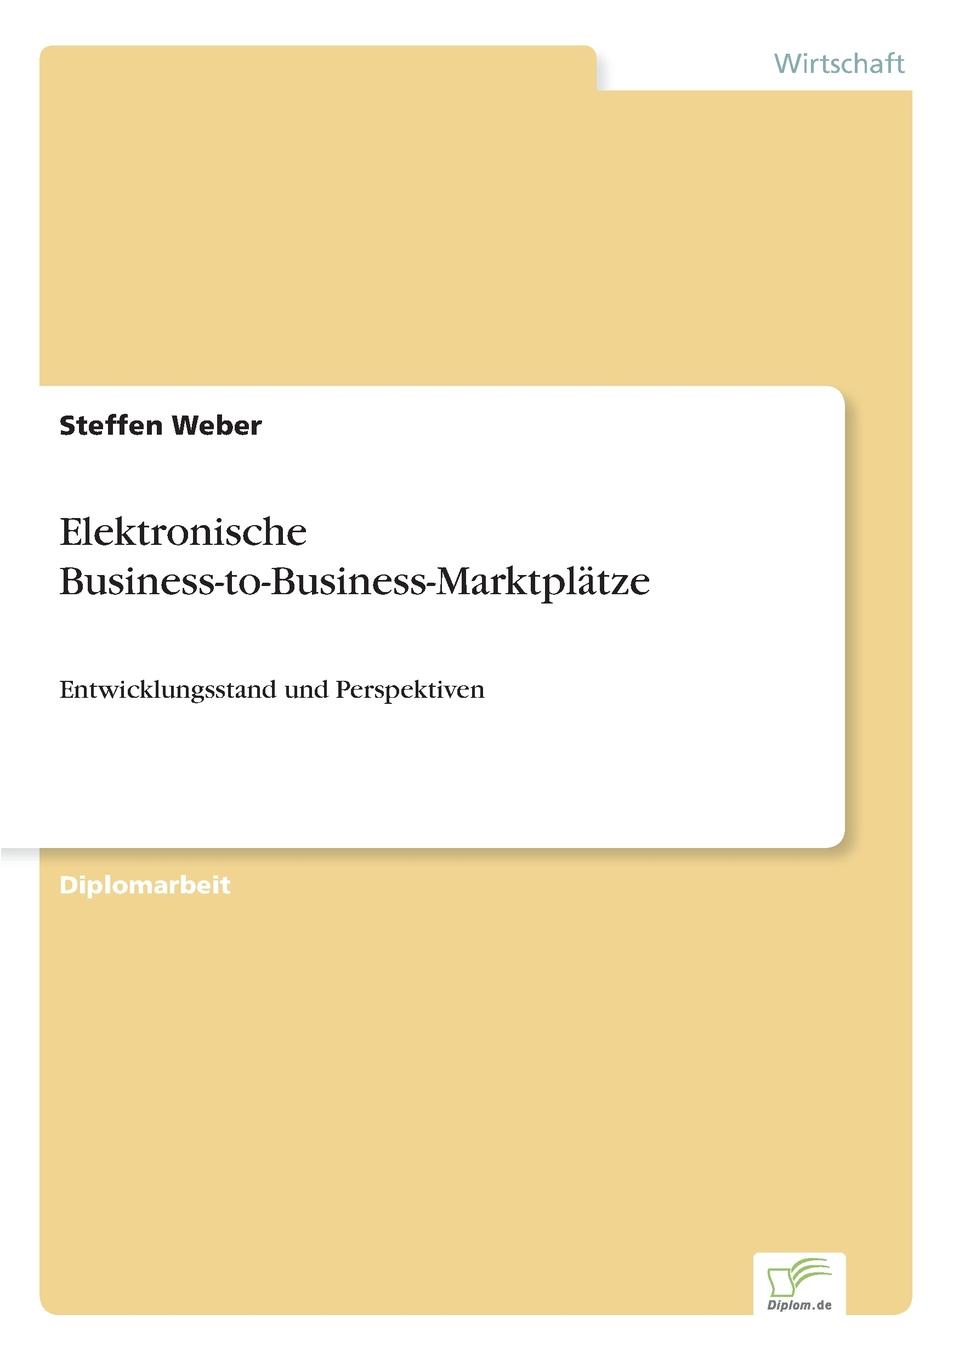 Elektronische Business-to-Business-Marktplatze